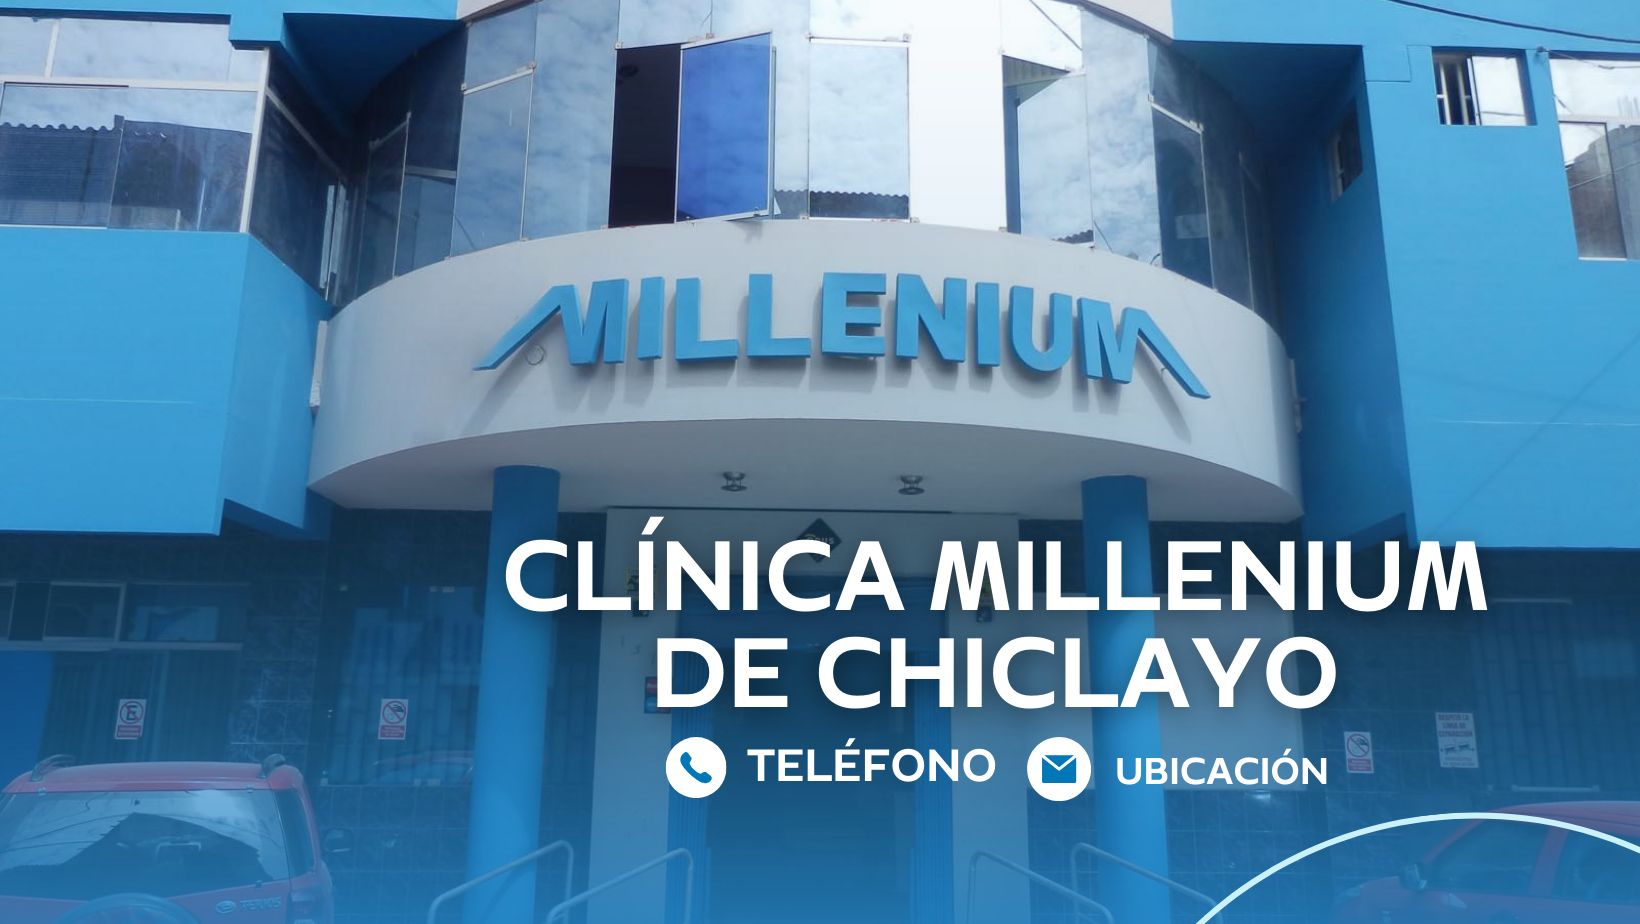 Clínica Millenium de Chiclayo: teléfono, ubicación y especialidades